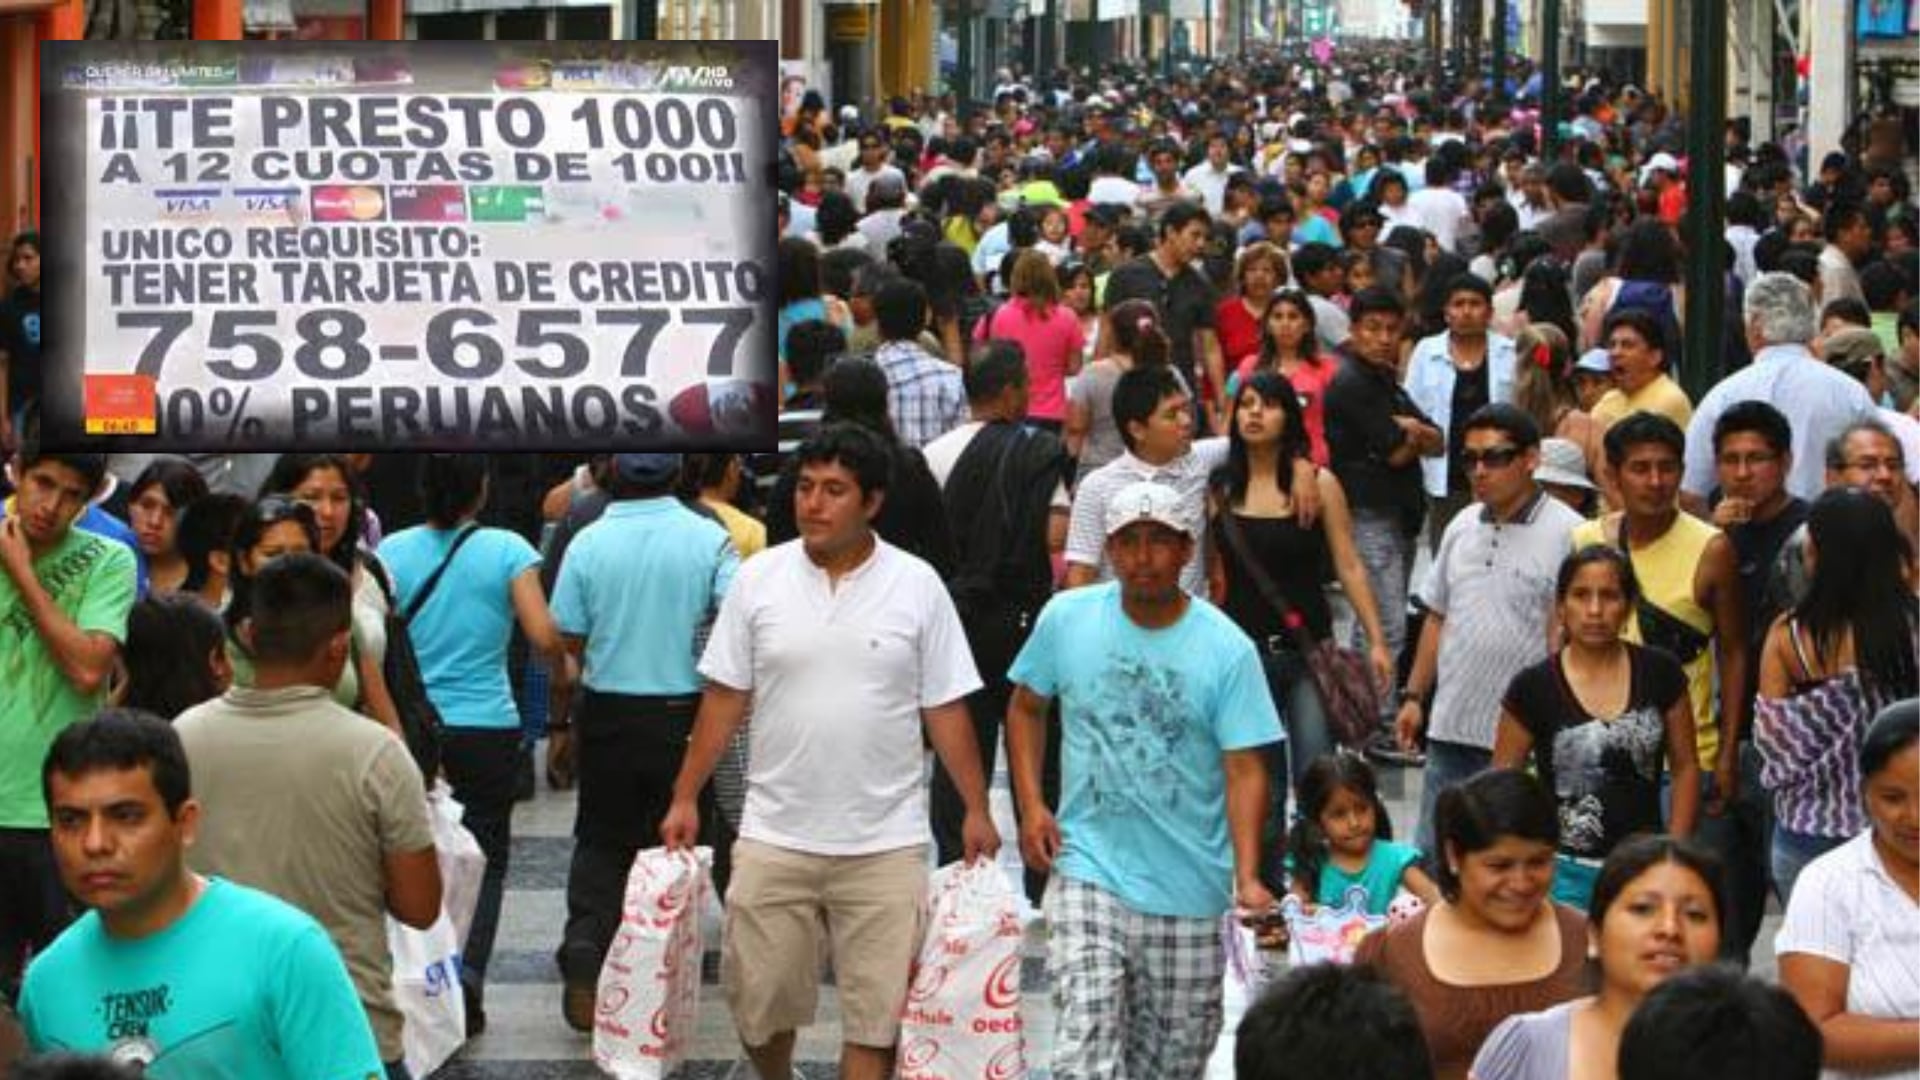 Una de las estafas más comunes son los préstamos 'gota a gota' que pone en peligro la vida e integridad de los peruanos. | Foto composición: Infobae.